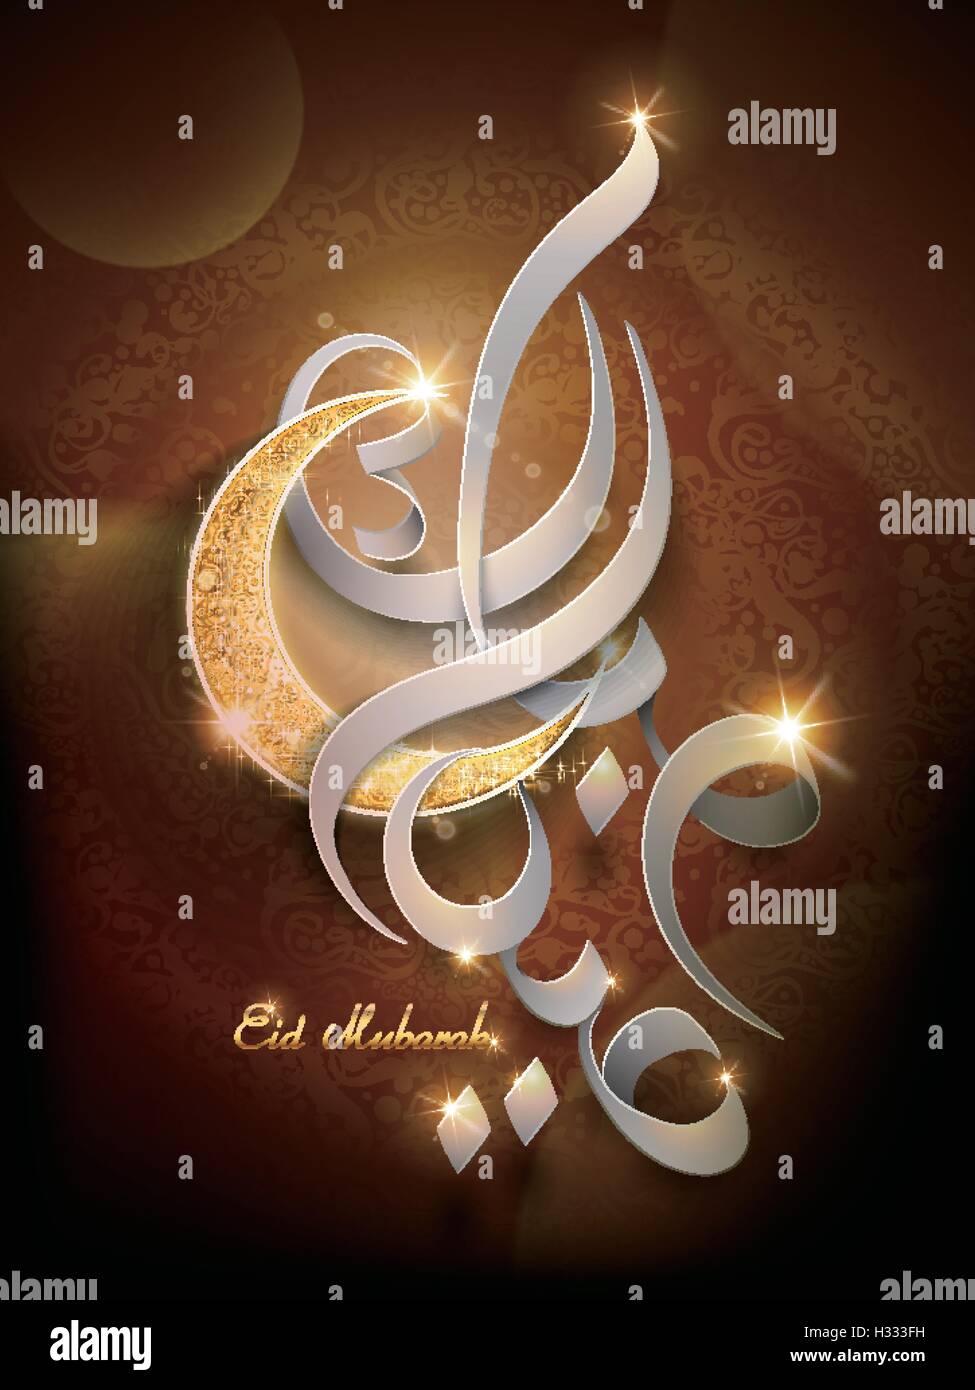 Eid Mubarak Kalligraphie Design Zarte Weihnachtskarte Fur Ramadan Oder Opfer Fest Funkeln Und Glitzern Mond Mit Elegan Stock Vektorgrafik Alamy